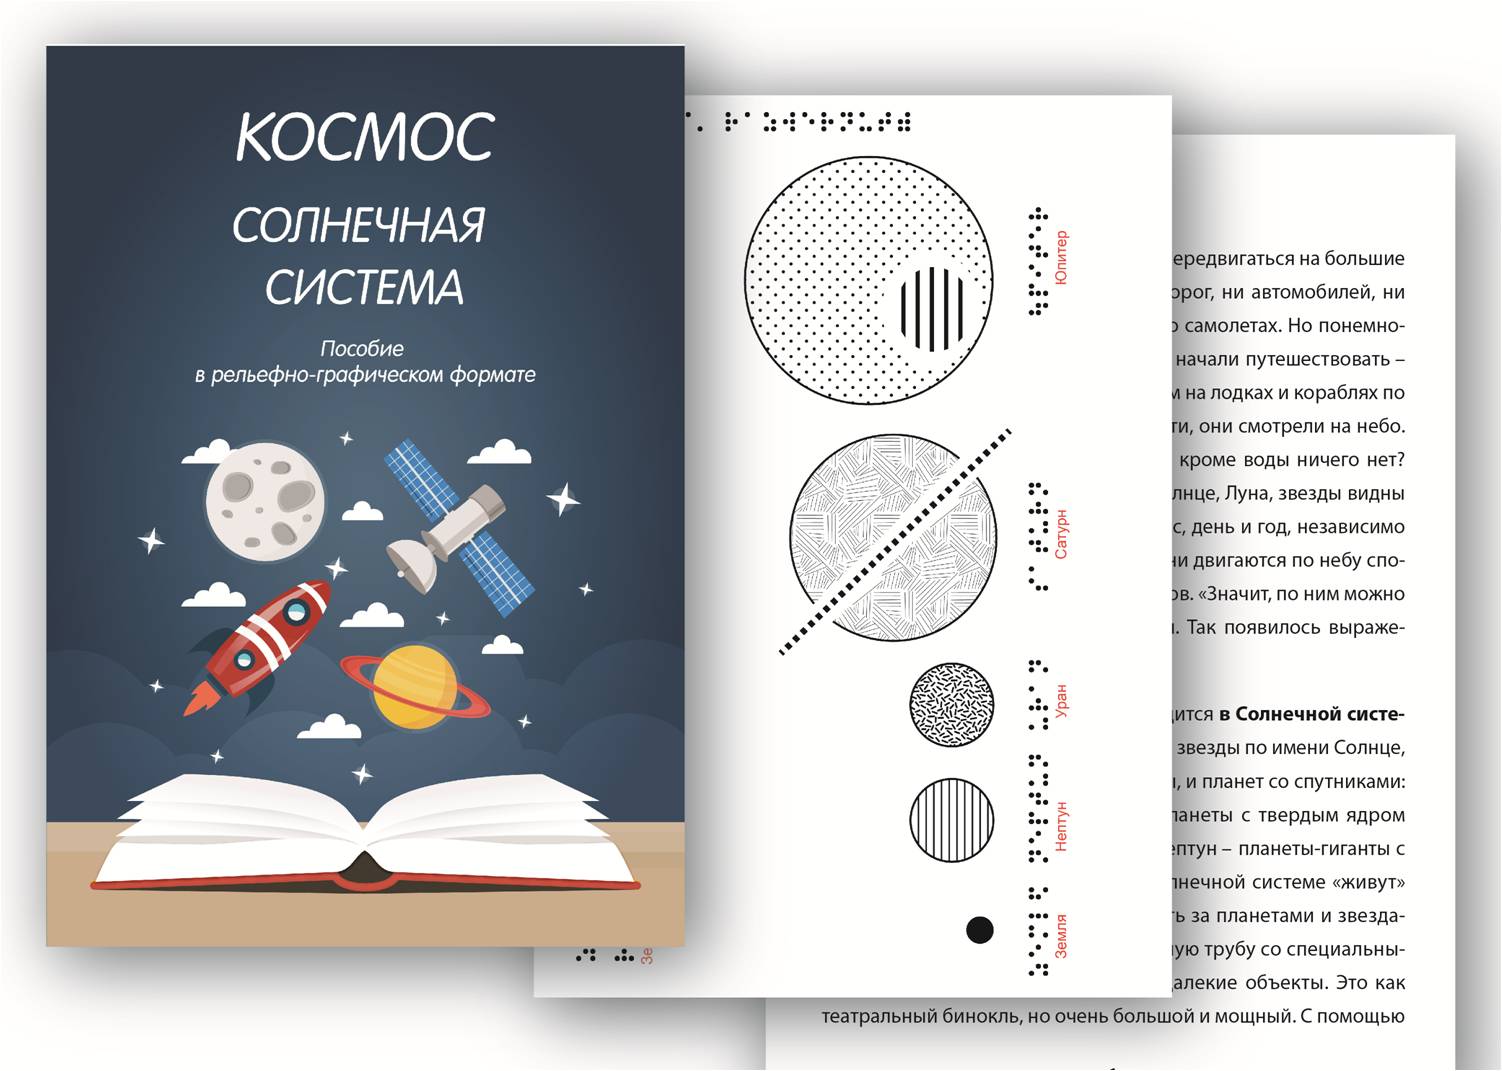 Рельефно-графическое пособие "Космос и солнечная система", обложка и разворот пособия.